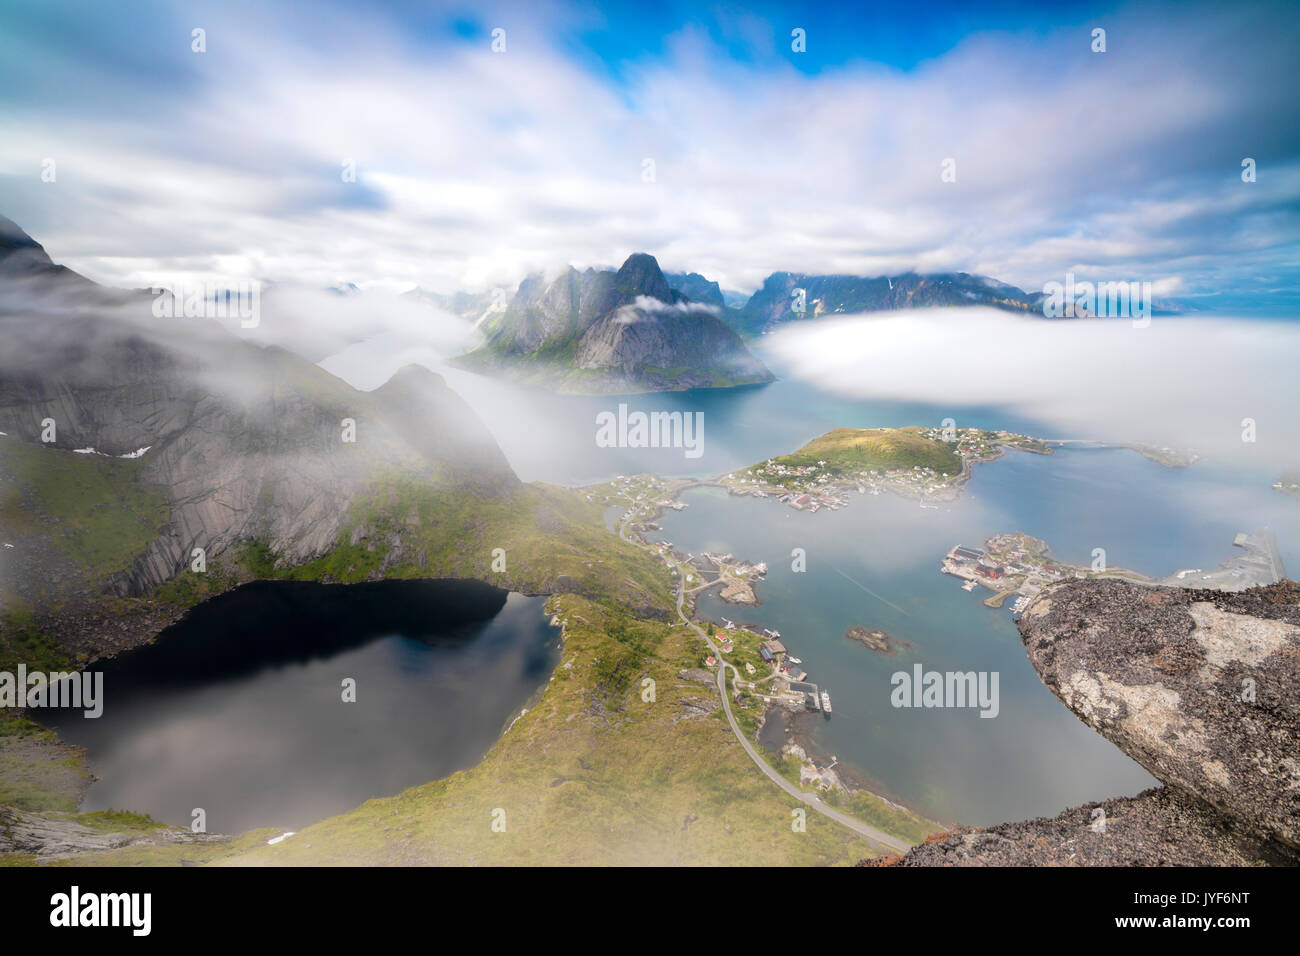 Vue de dessus de lacs et la mer sous le ciel nuageux à été Reinebringen Europe Norvège Iles Lofoten Moskenes Banque D'Images